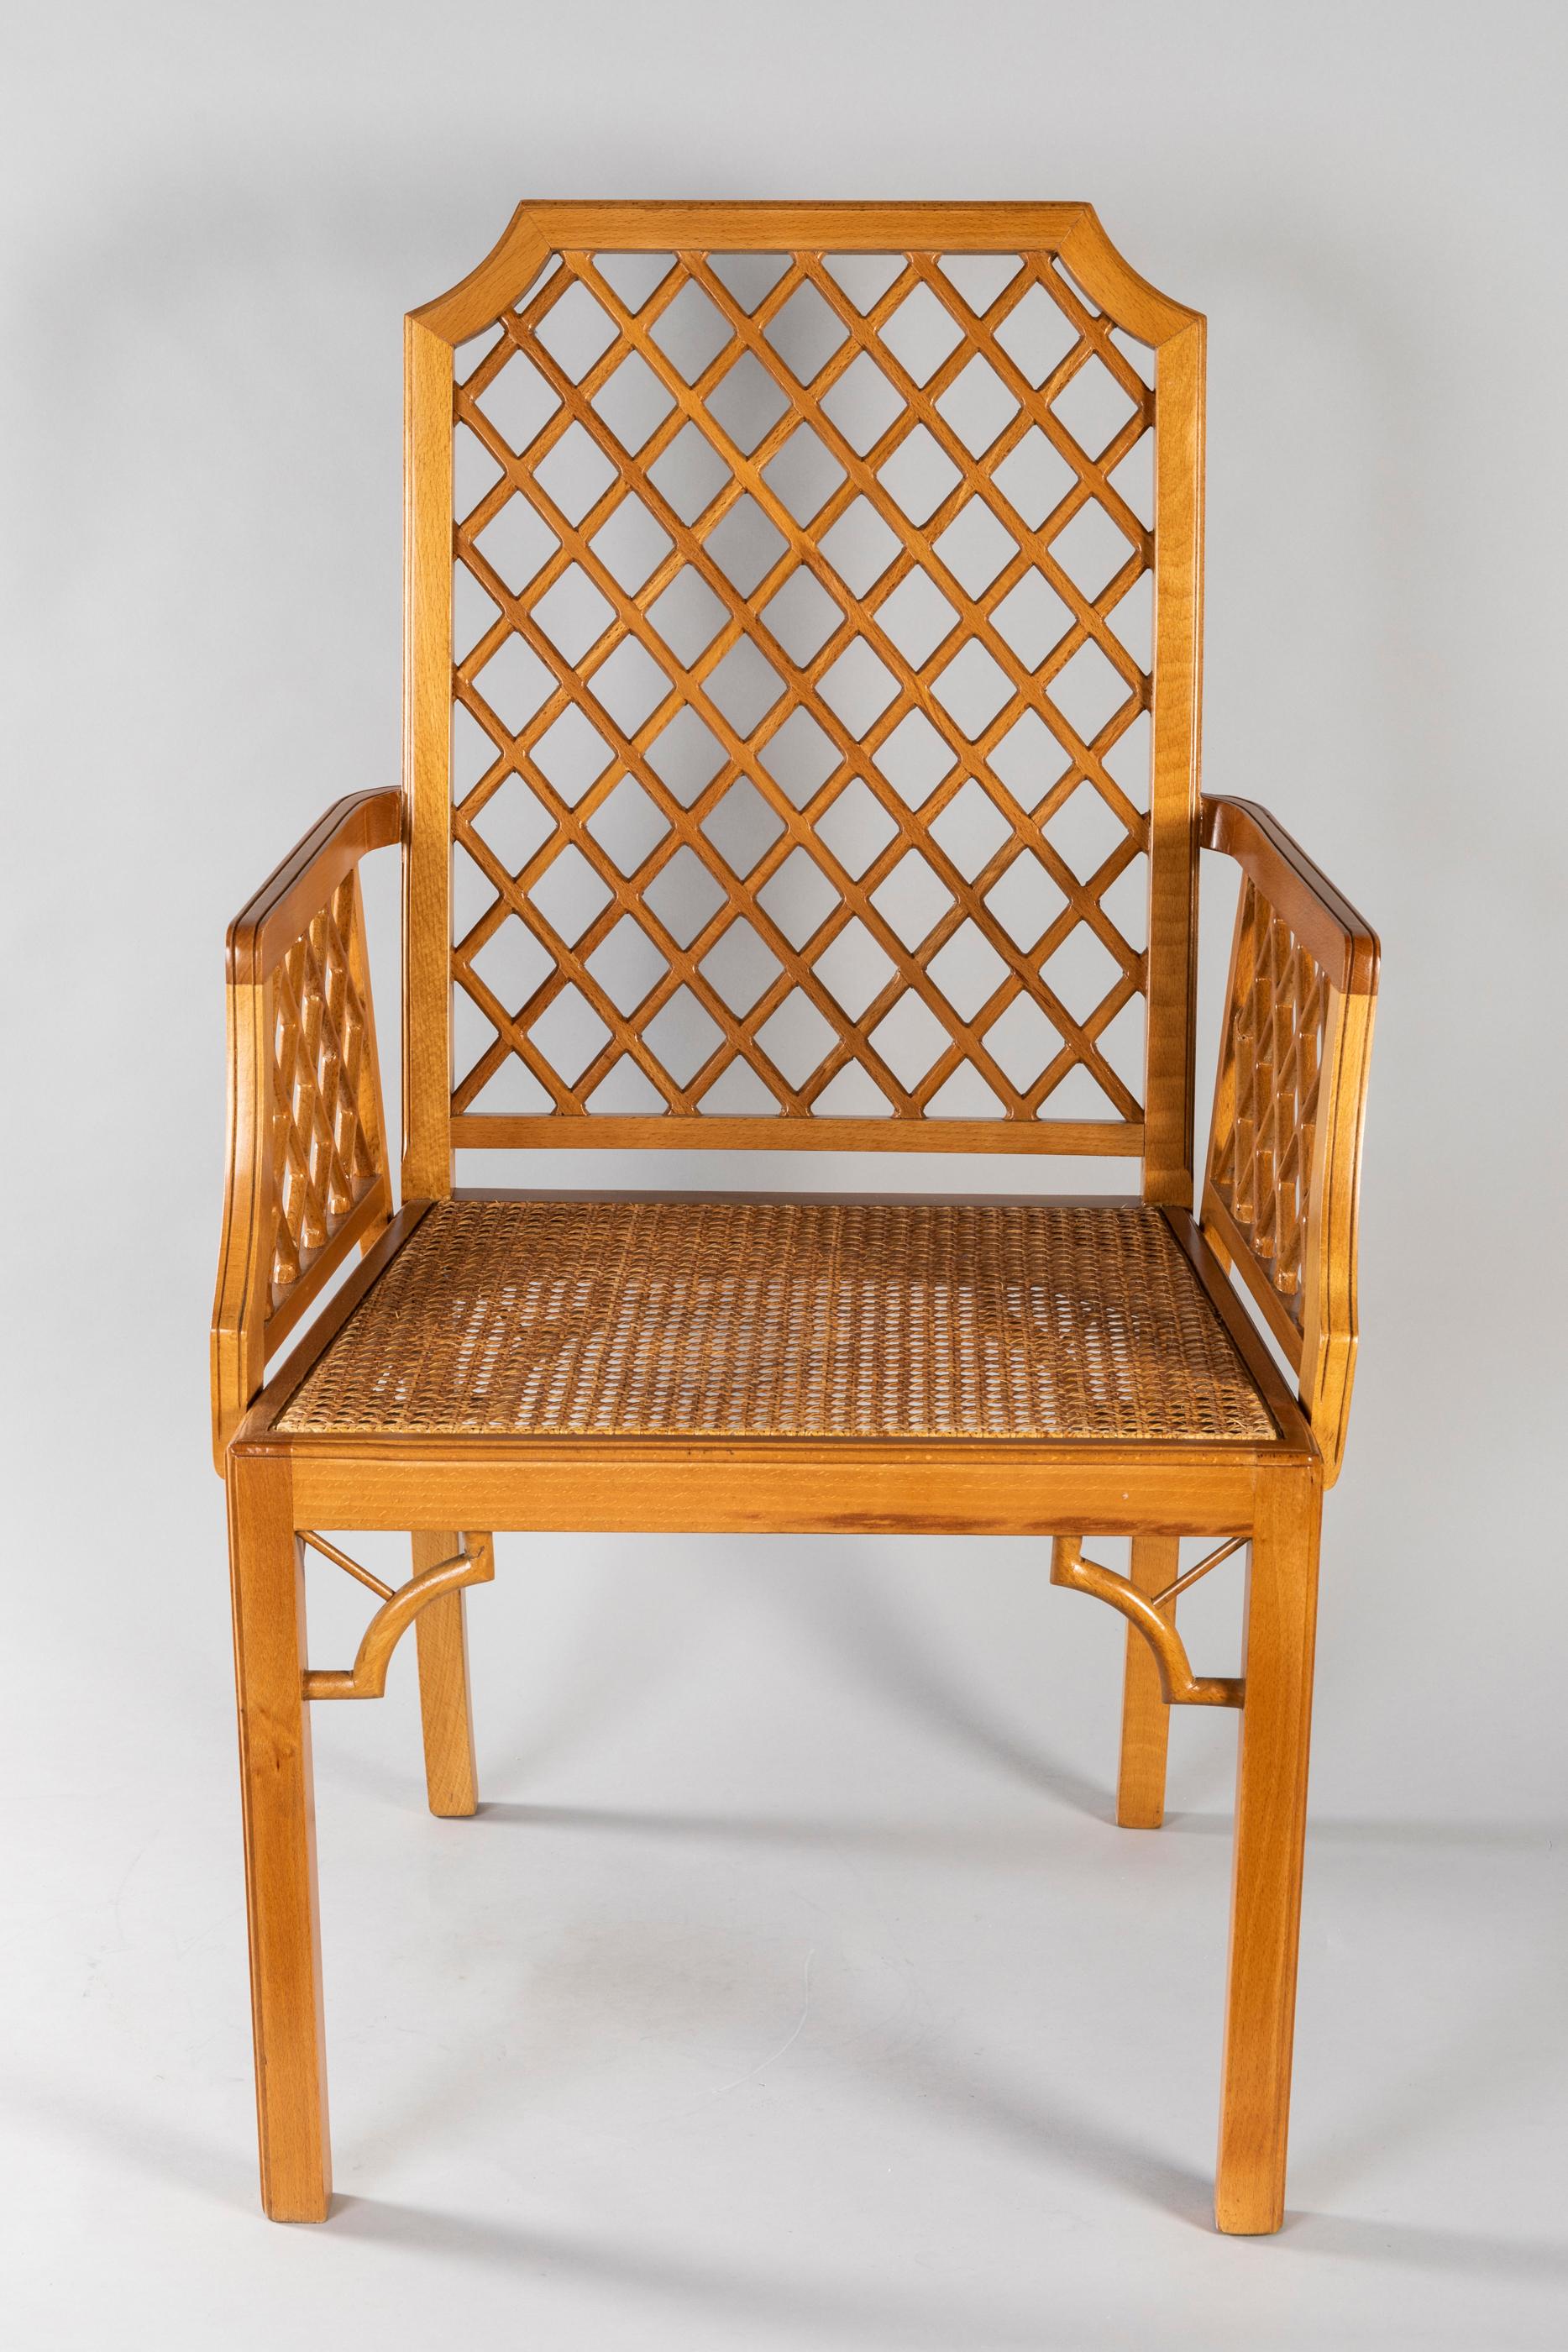 Minimaliste avec une fabrication française traditionnelle par la célèbre Maison et Jardin Galerie.
Ces 4 fauteuils sont fabriqués en bois de hêtre, sièges cannés et traverses dans le dos et les côtés. Facile, élégant, intemporel, c'est l'esprit de